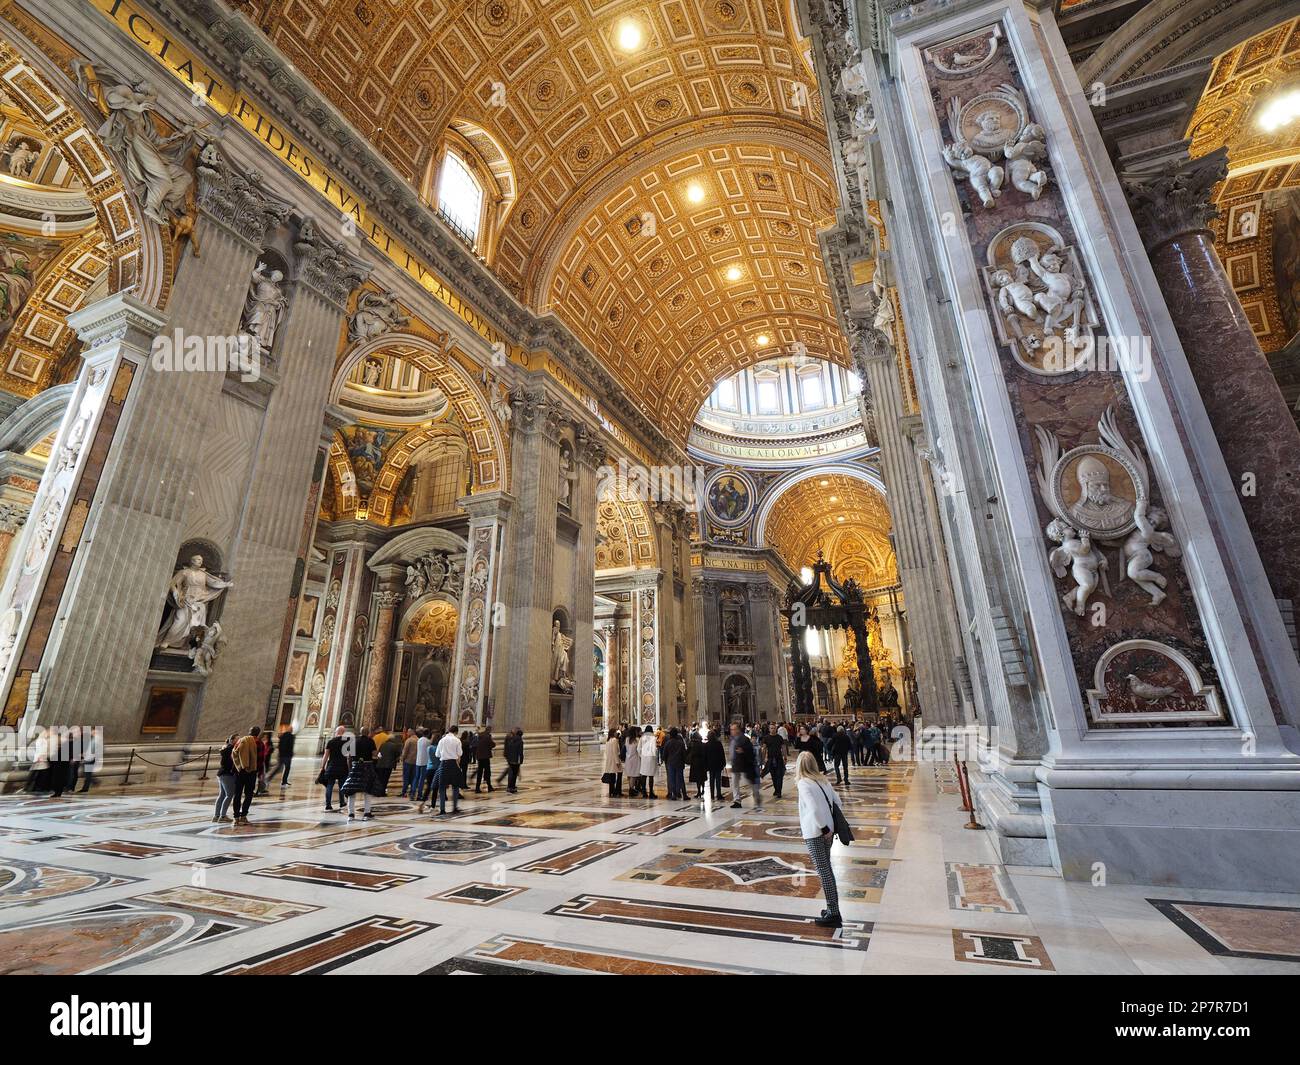 Les touristes à l'intérieur de la basilique Saint Peters, la décoration intérieure et la taille de celle-ci sont pleine d'esprit. Vatican, Europe Banque D'Images